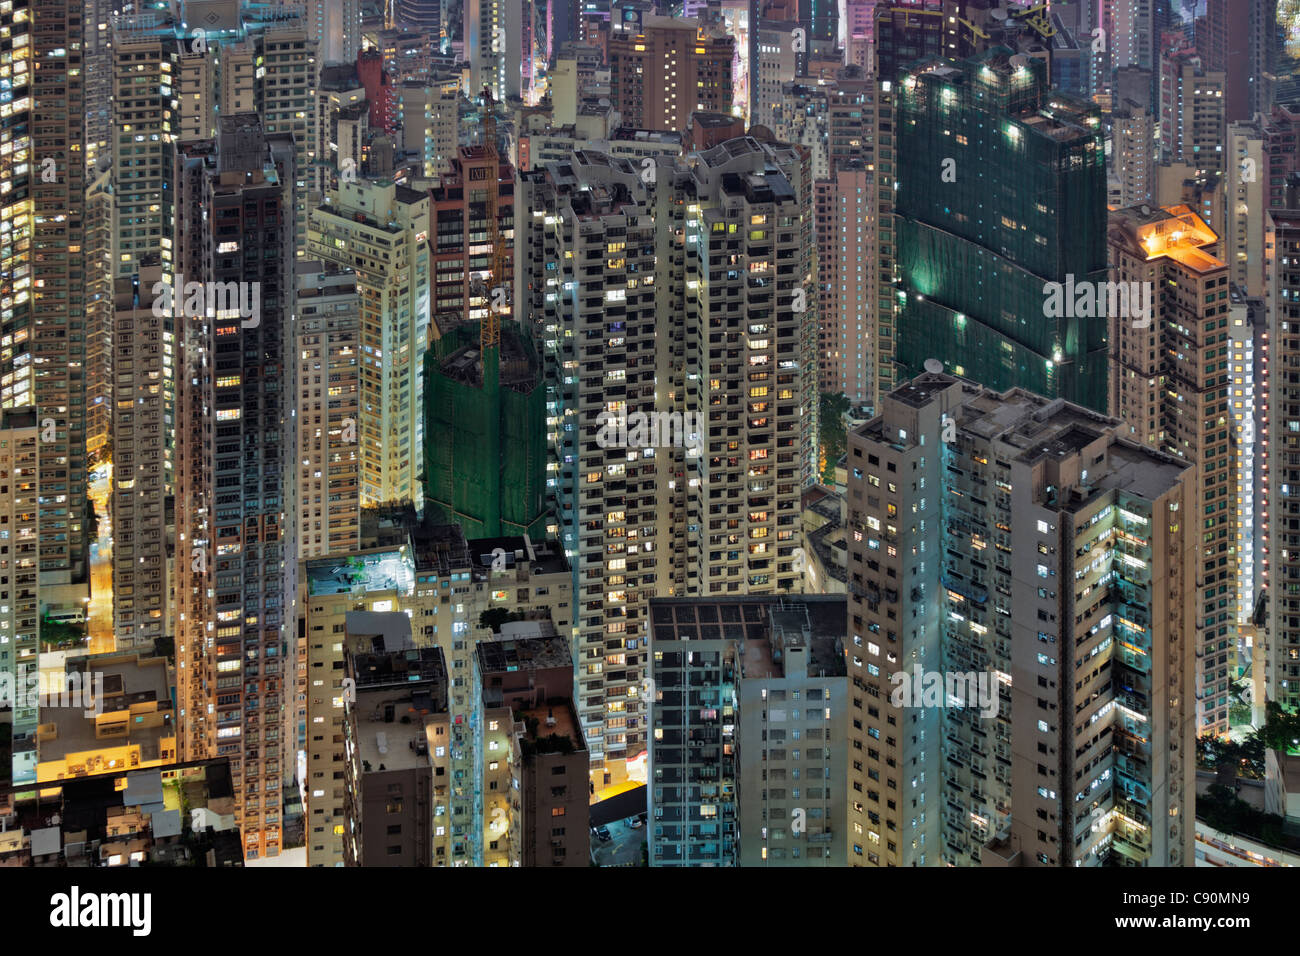 Hong Kong housing estate at night, Hong Kong, China Stock Photo